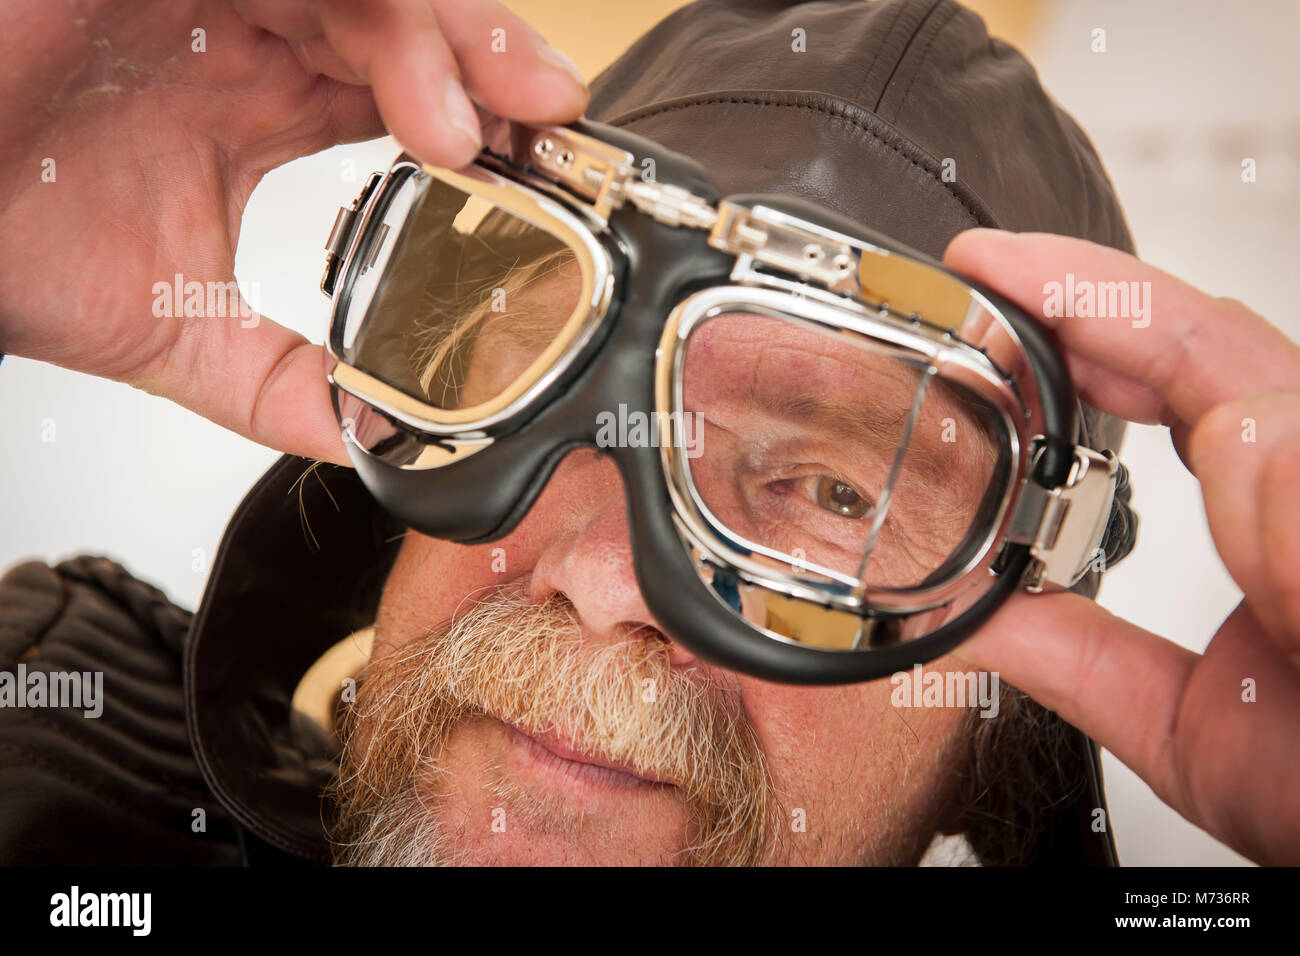 Close-up of a senior man avec barbe, chapeau de cuir tient avec les deux mains un lunettes moto en face de son visage et des clins d'dans l'appareil photo Banque D'Images